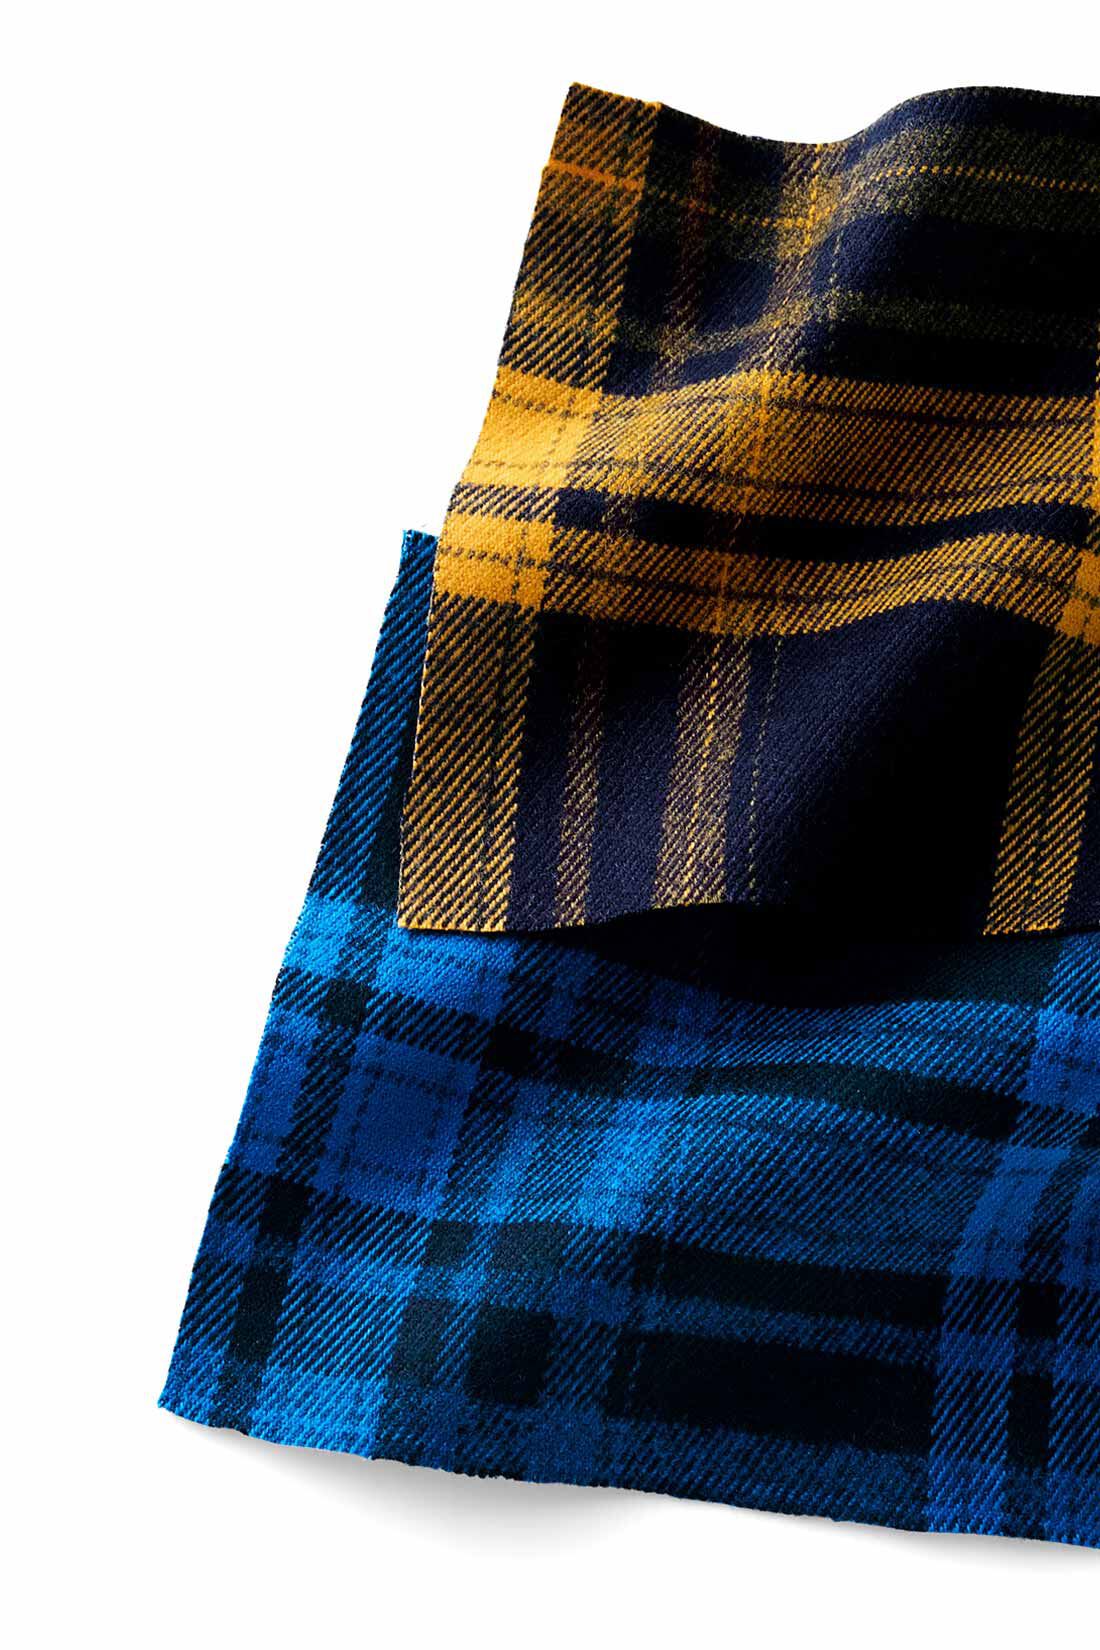 MEDE19F|MEDE19F　バイカラーチェックスカート〈イエロー〉|先染めチェックの布はく生地。適度な厚みとあたたかな風合いで秋冬らしく。